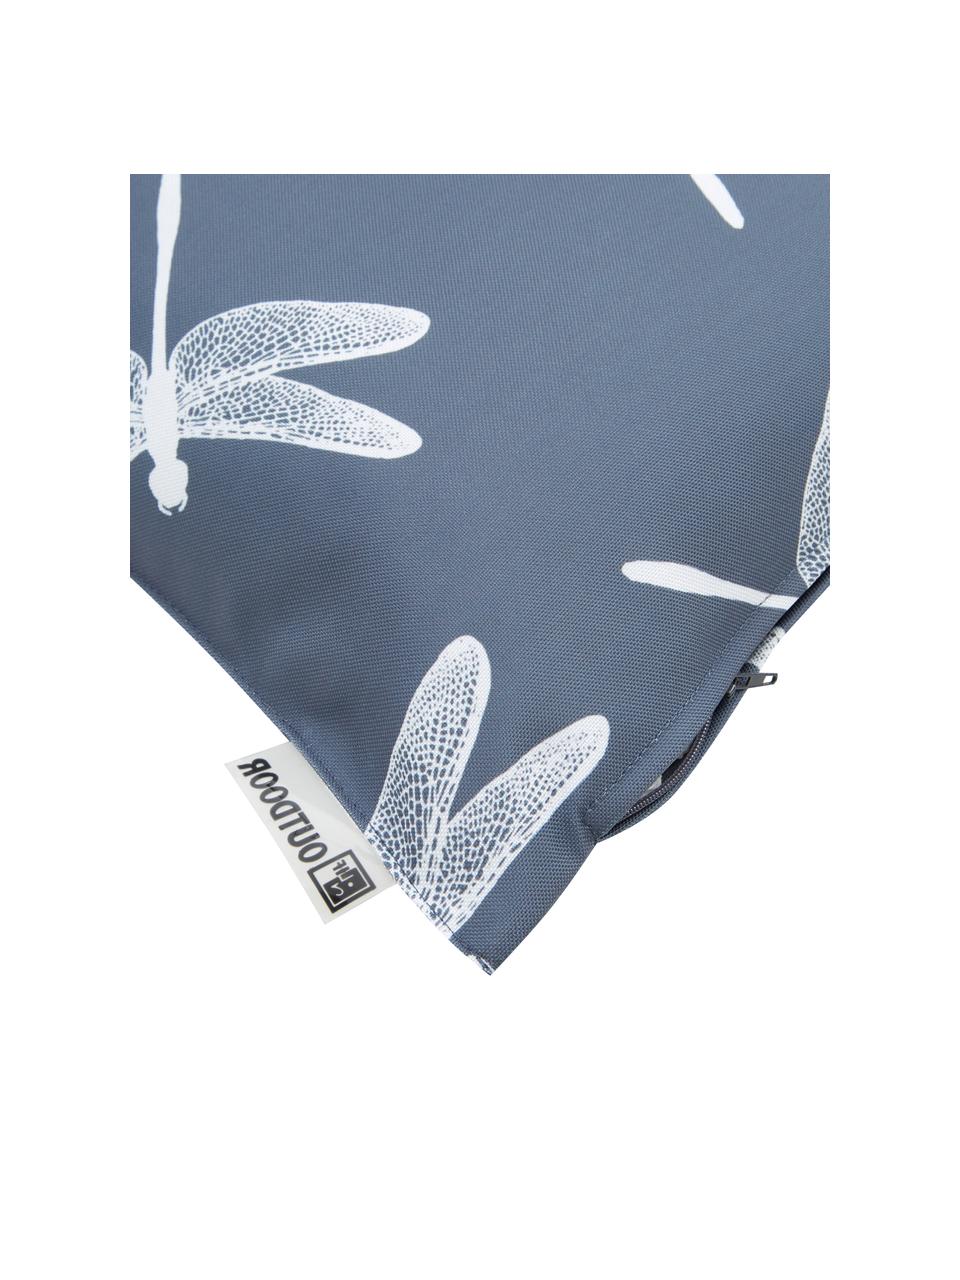 Coussin d'extérieur gris foncé Dragonfly, 100 % polyester, Gris foncé, blanc, larg. 47 x long. 47 cm